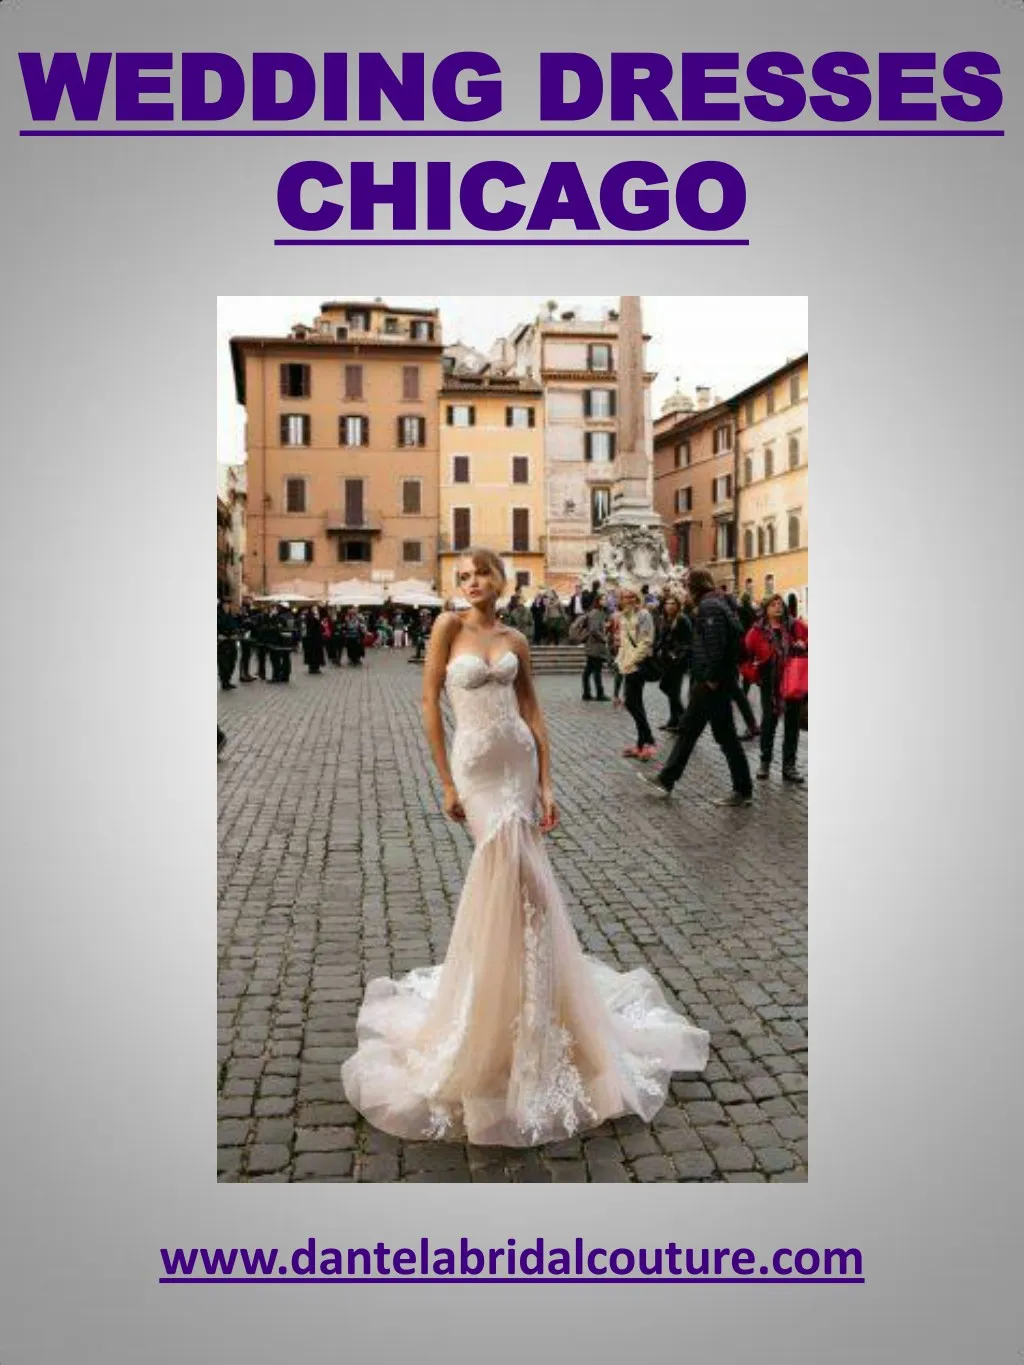 wedding dresses wedding dresses chicago chicago